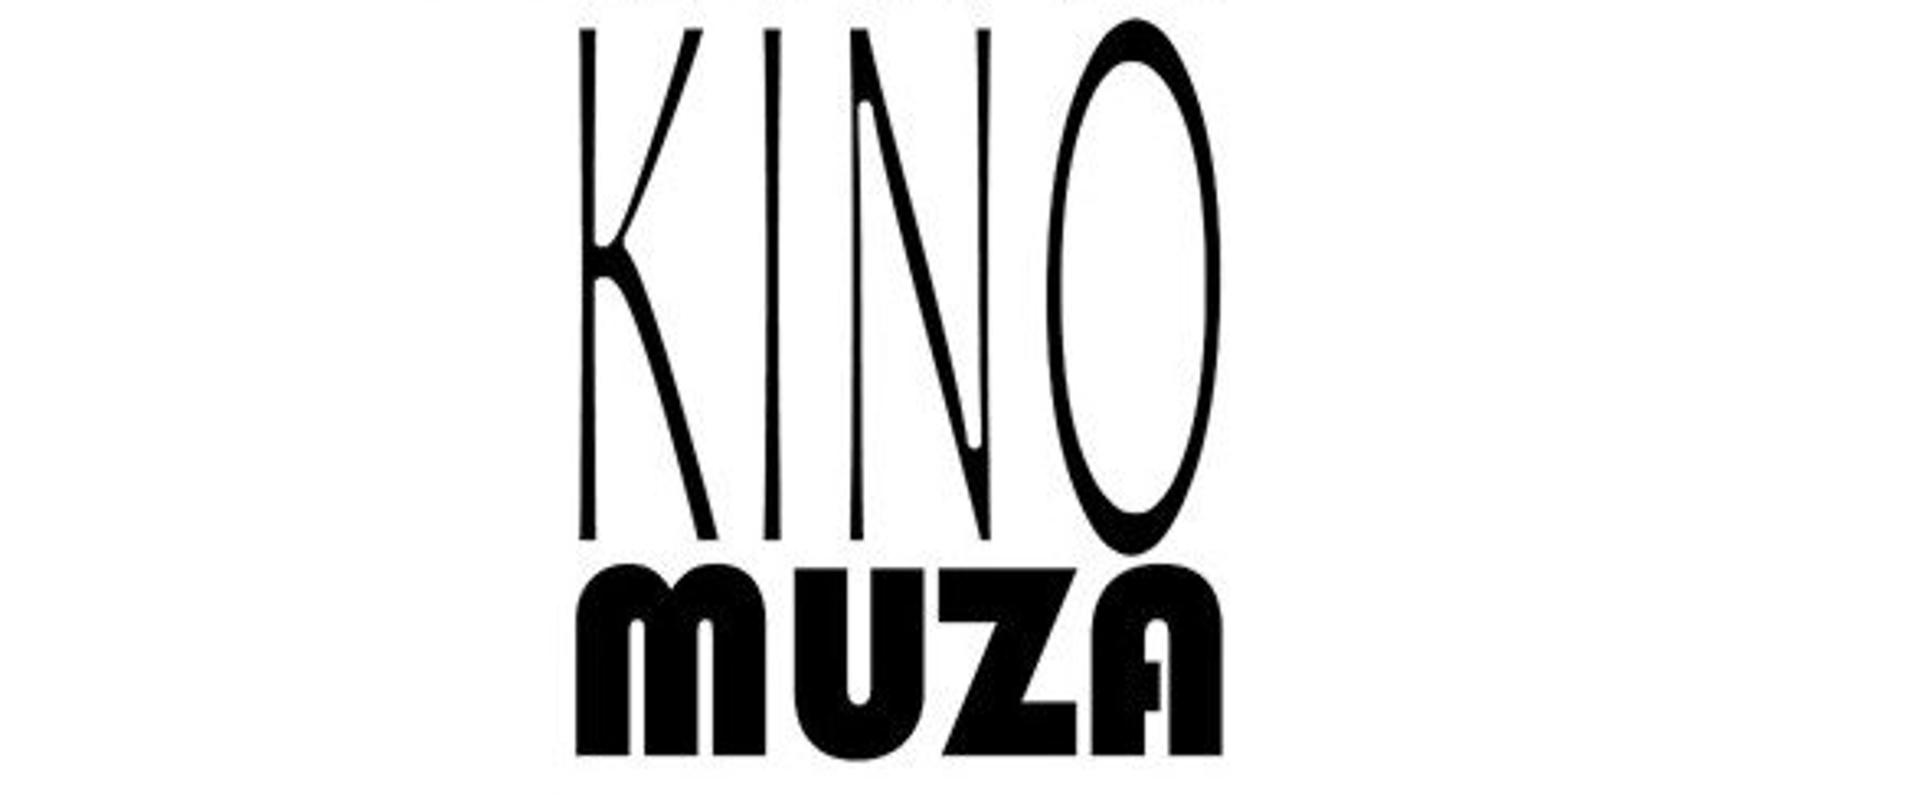 Logo Kina Muza, czarne linie poprowadzone w taki sposób że przedstawiają projektor filmowy, dwie rolki taśmy i obiektyw, poniżej napis KINO muza